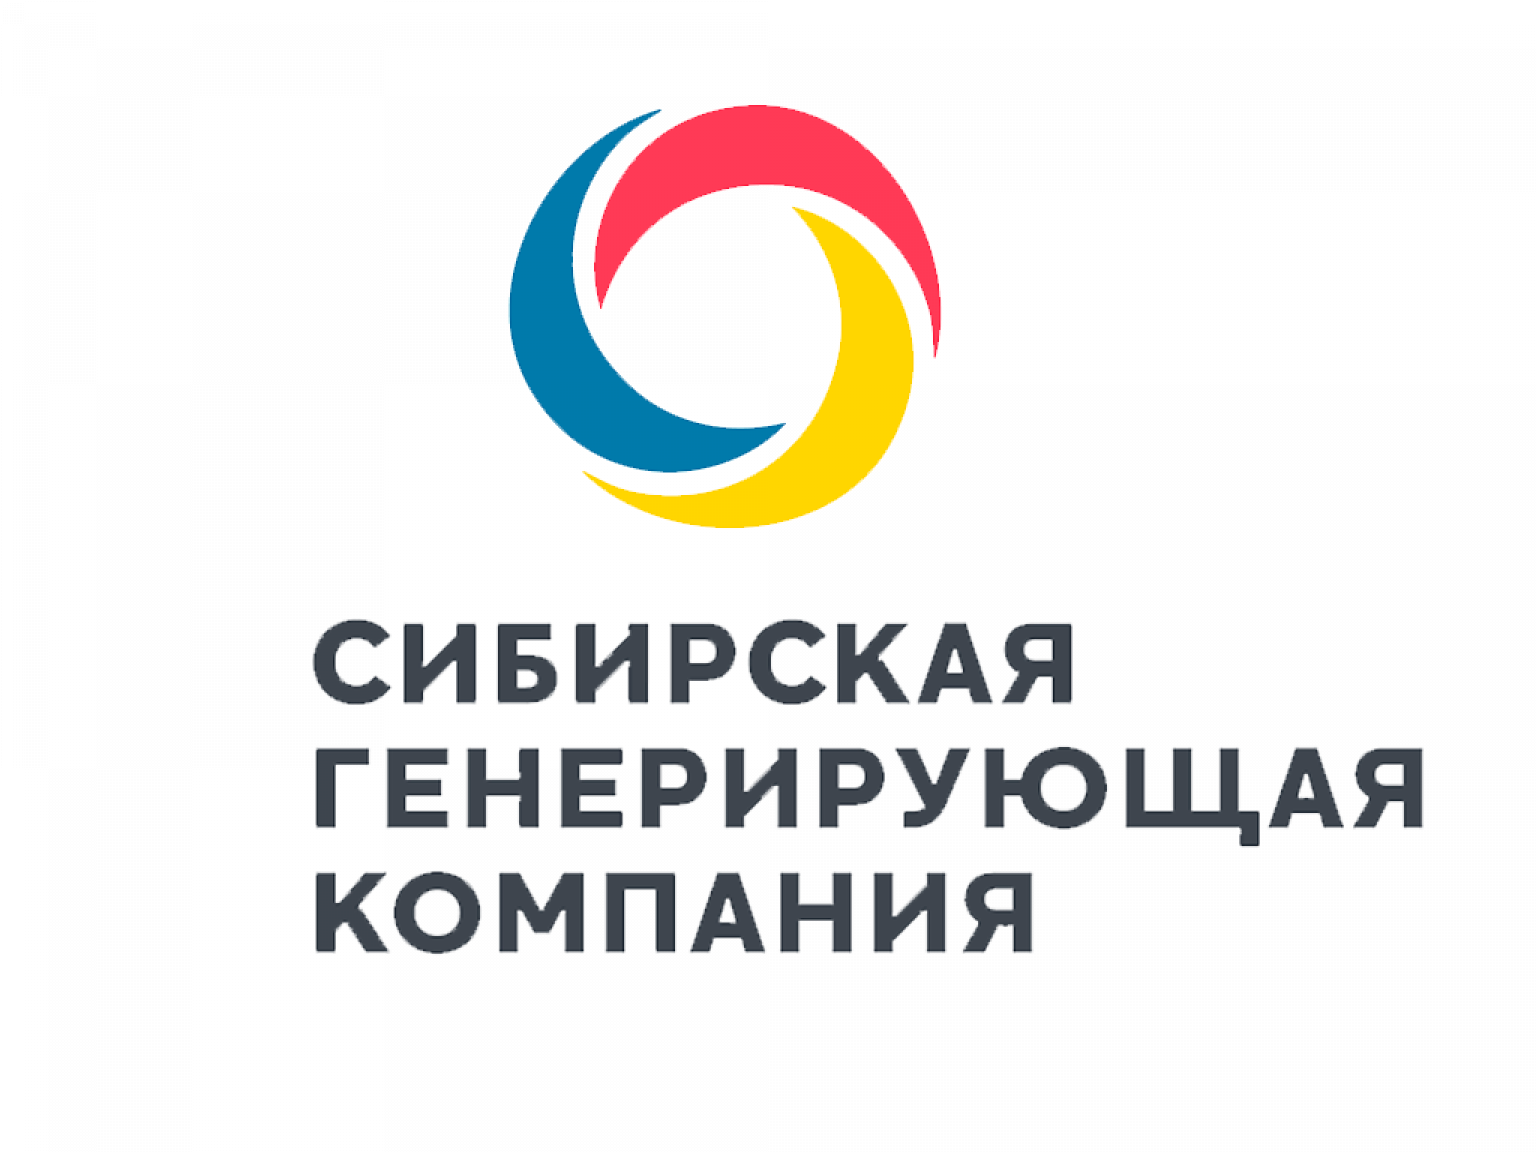 Сайт сгк новосибирск. Сибирская генерирующая компания СГК. Эмблема СГК. Сибирская генерирующая компания логотип. СГК Новосибирск логотип.